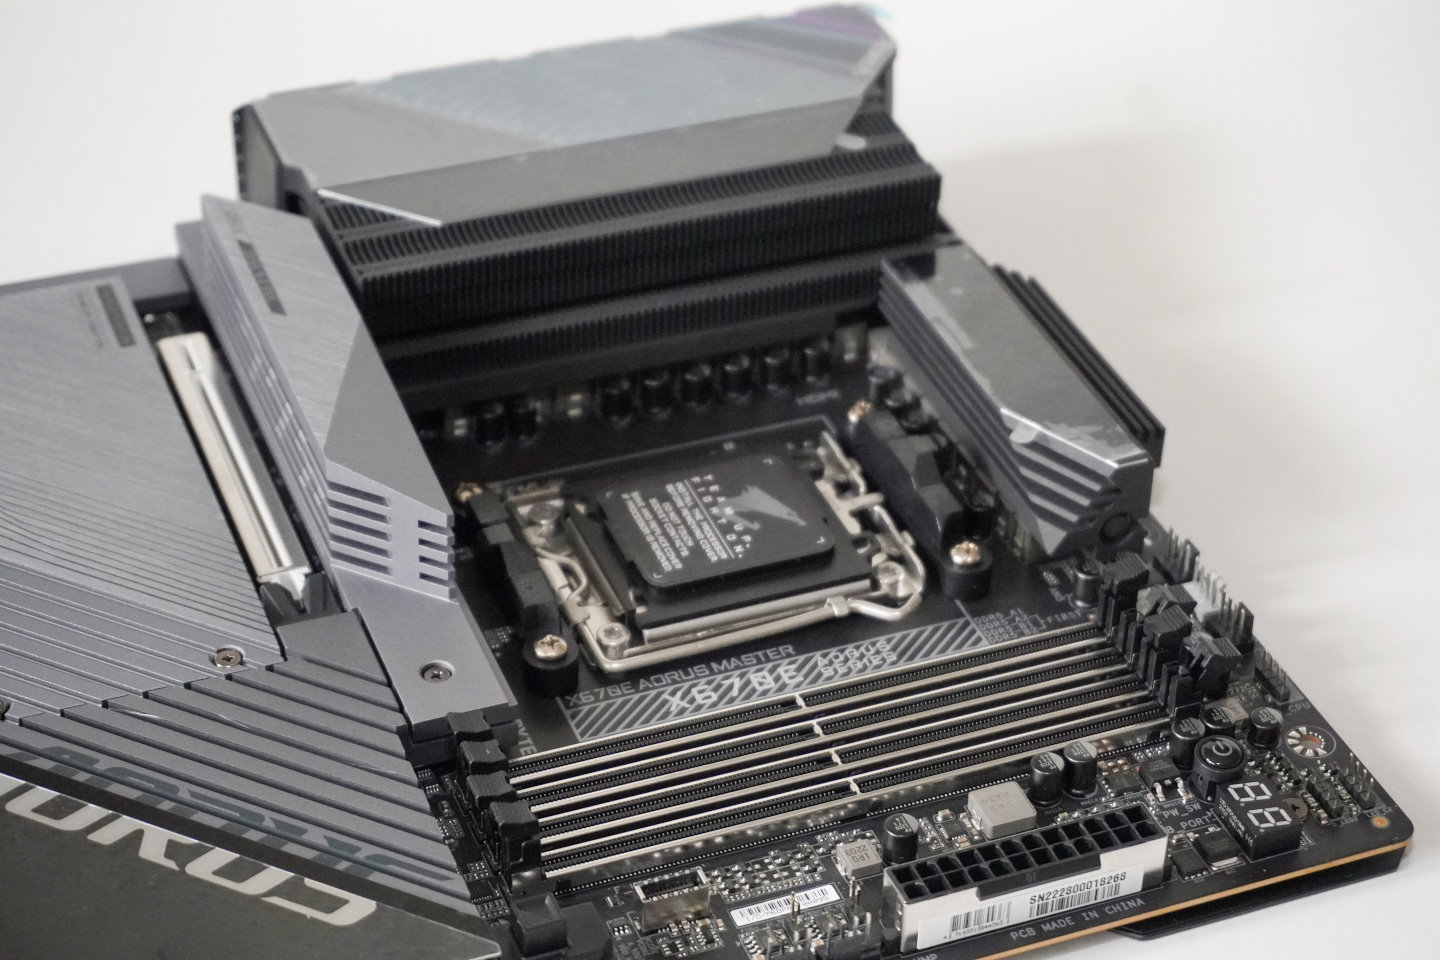 X670E AORUS Maste採用20相供電計（16 VCore + 2 SOC + 2Misc），並在電源模組與第1條固態硬碟部分覆蓋大型散熱片，具有4條DDR5 DIMM插槽。